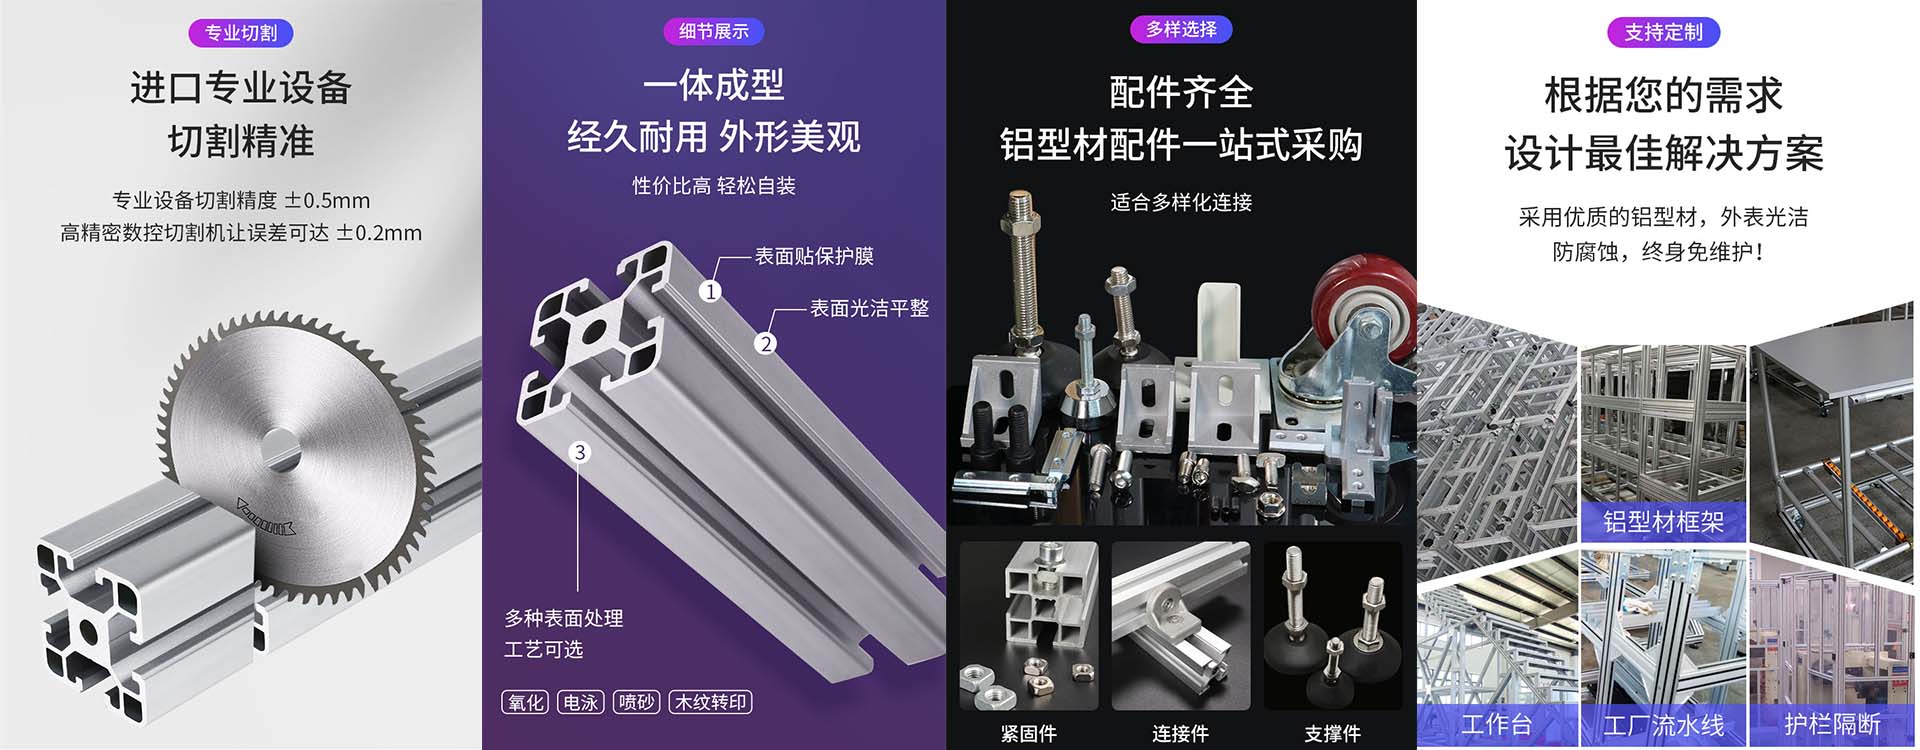 上海礬森鋁制品有限公司